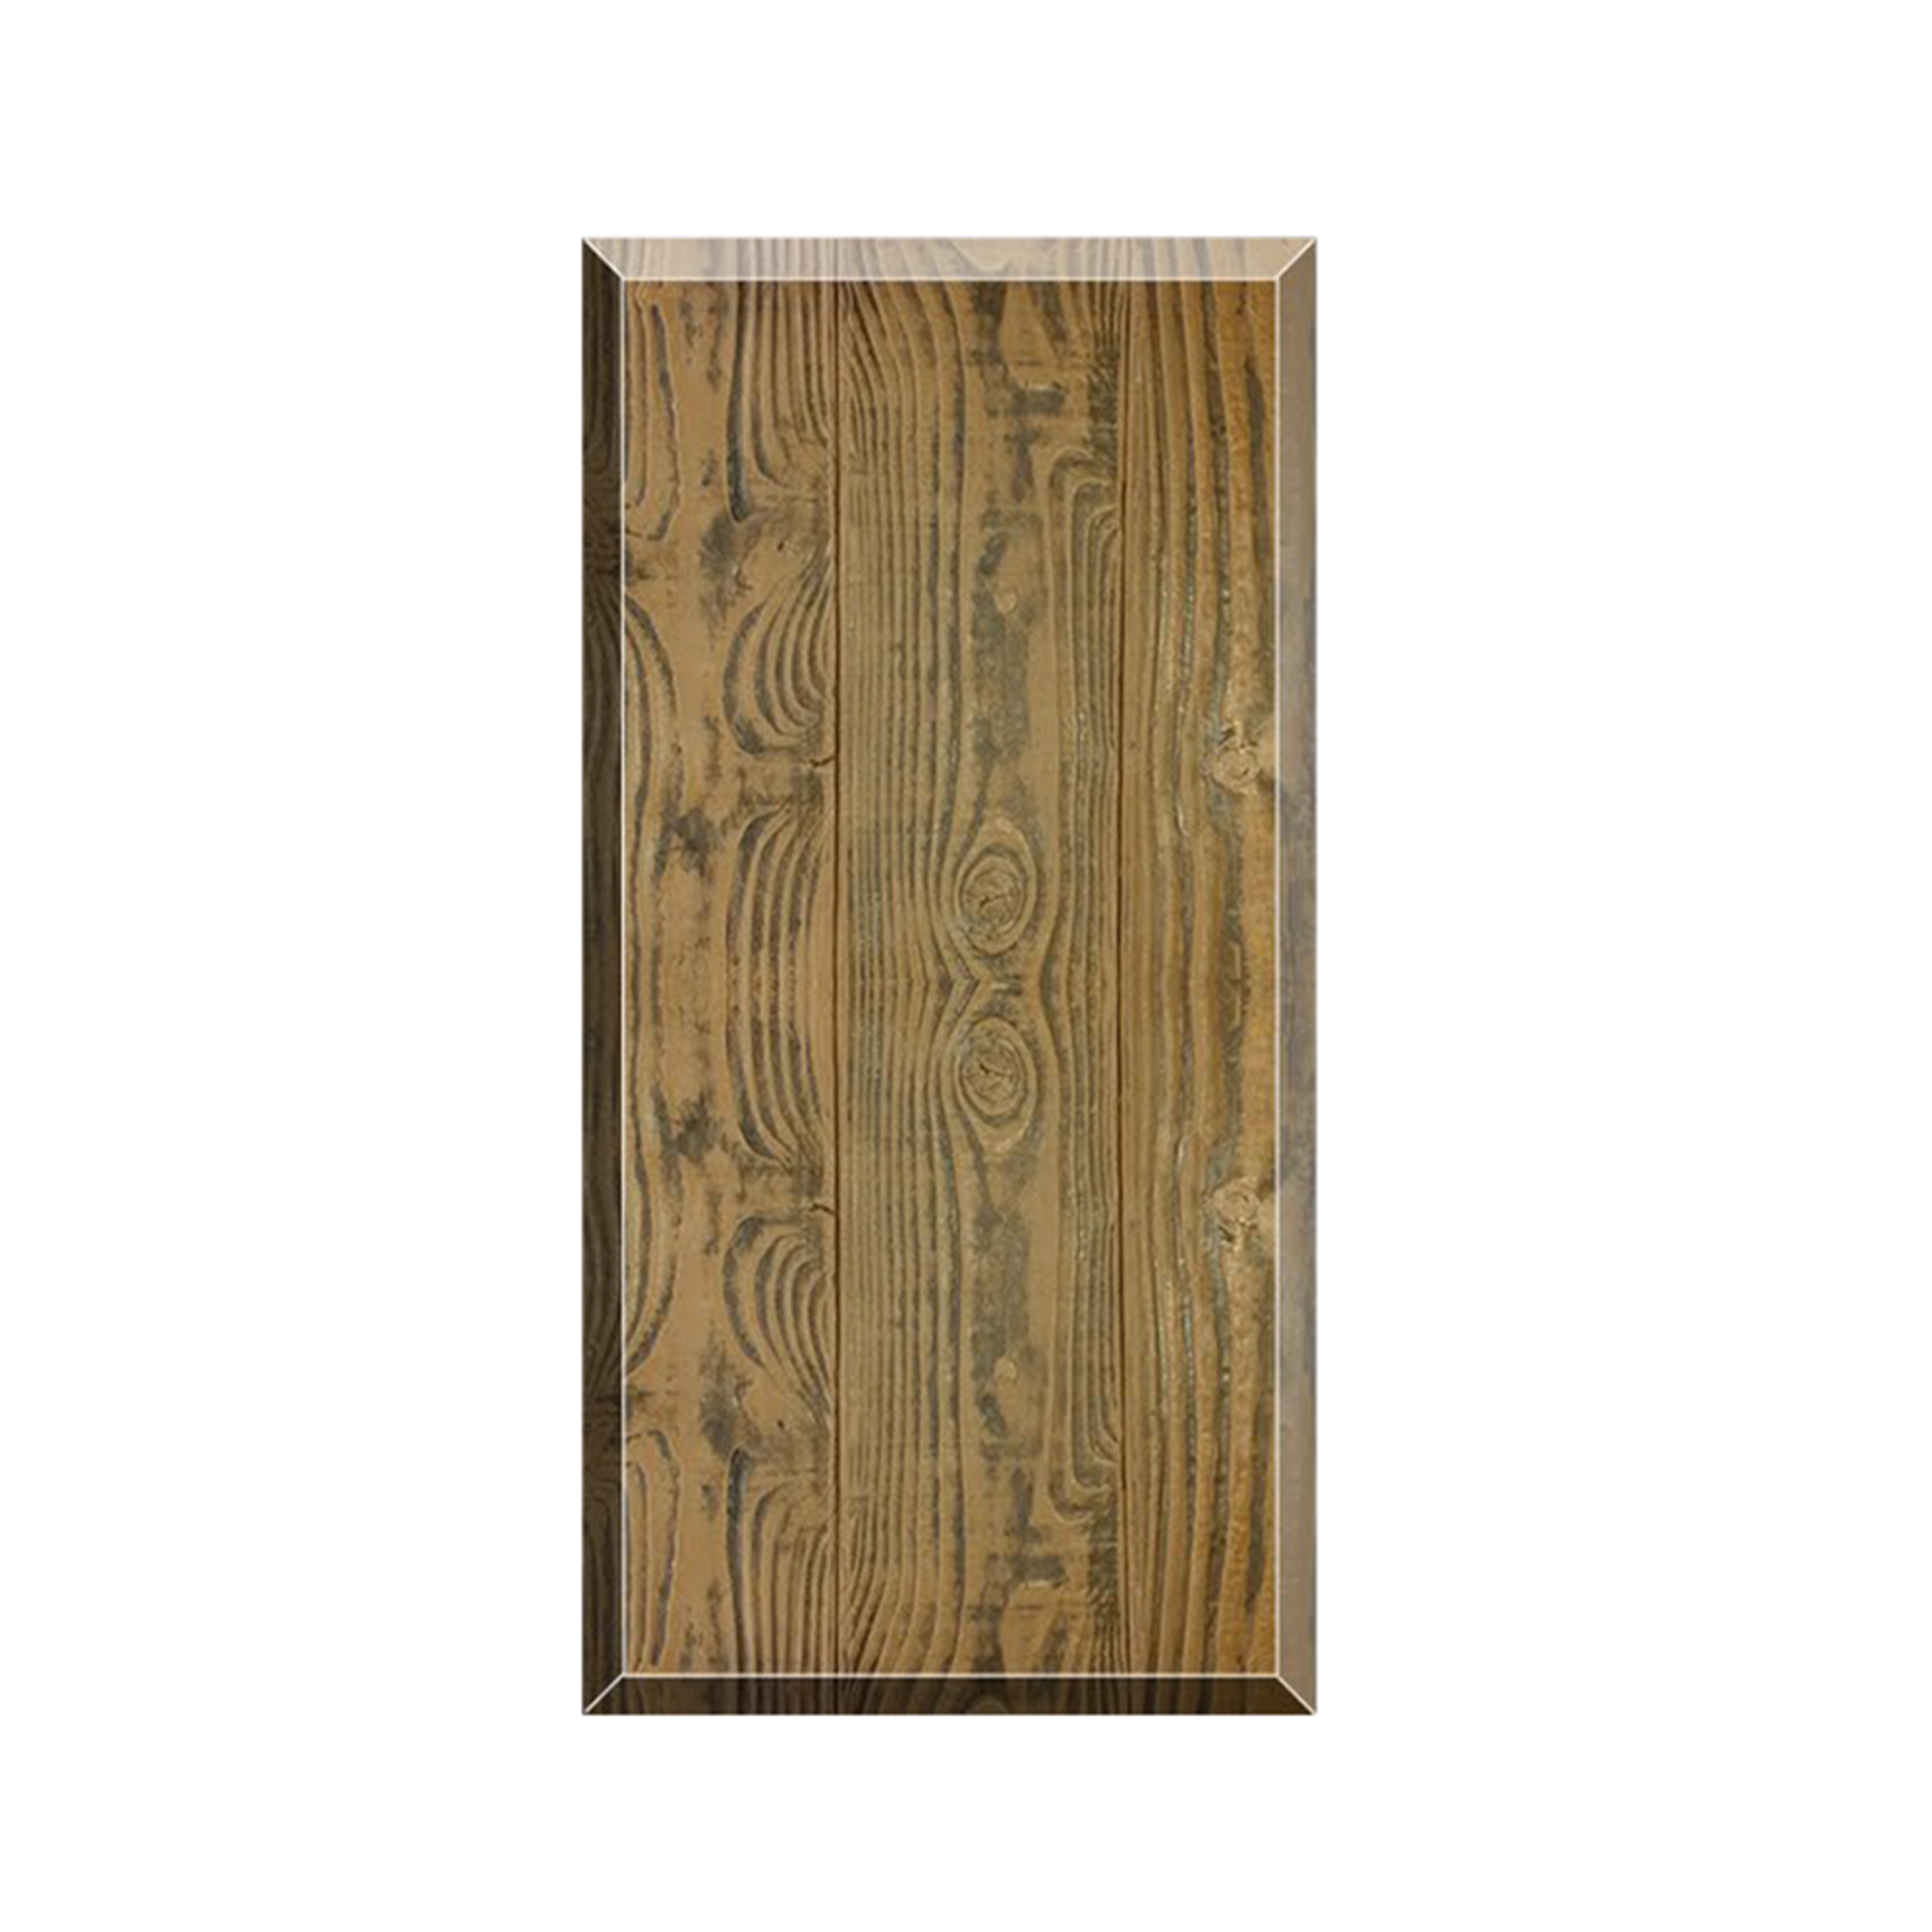  Woodgrain Concrete Board